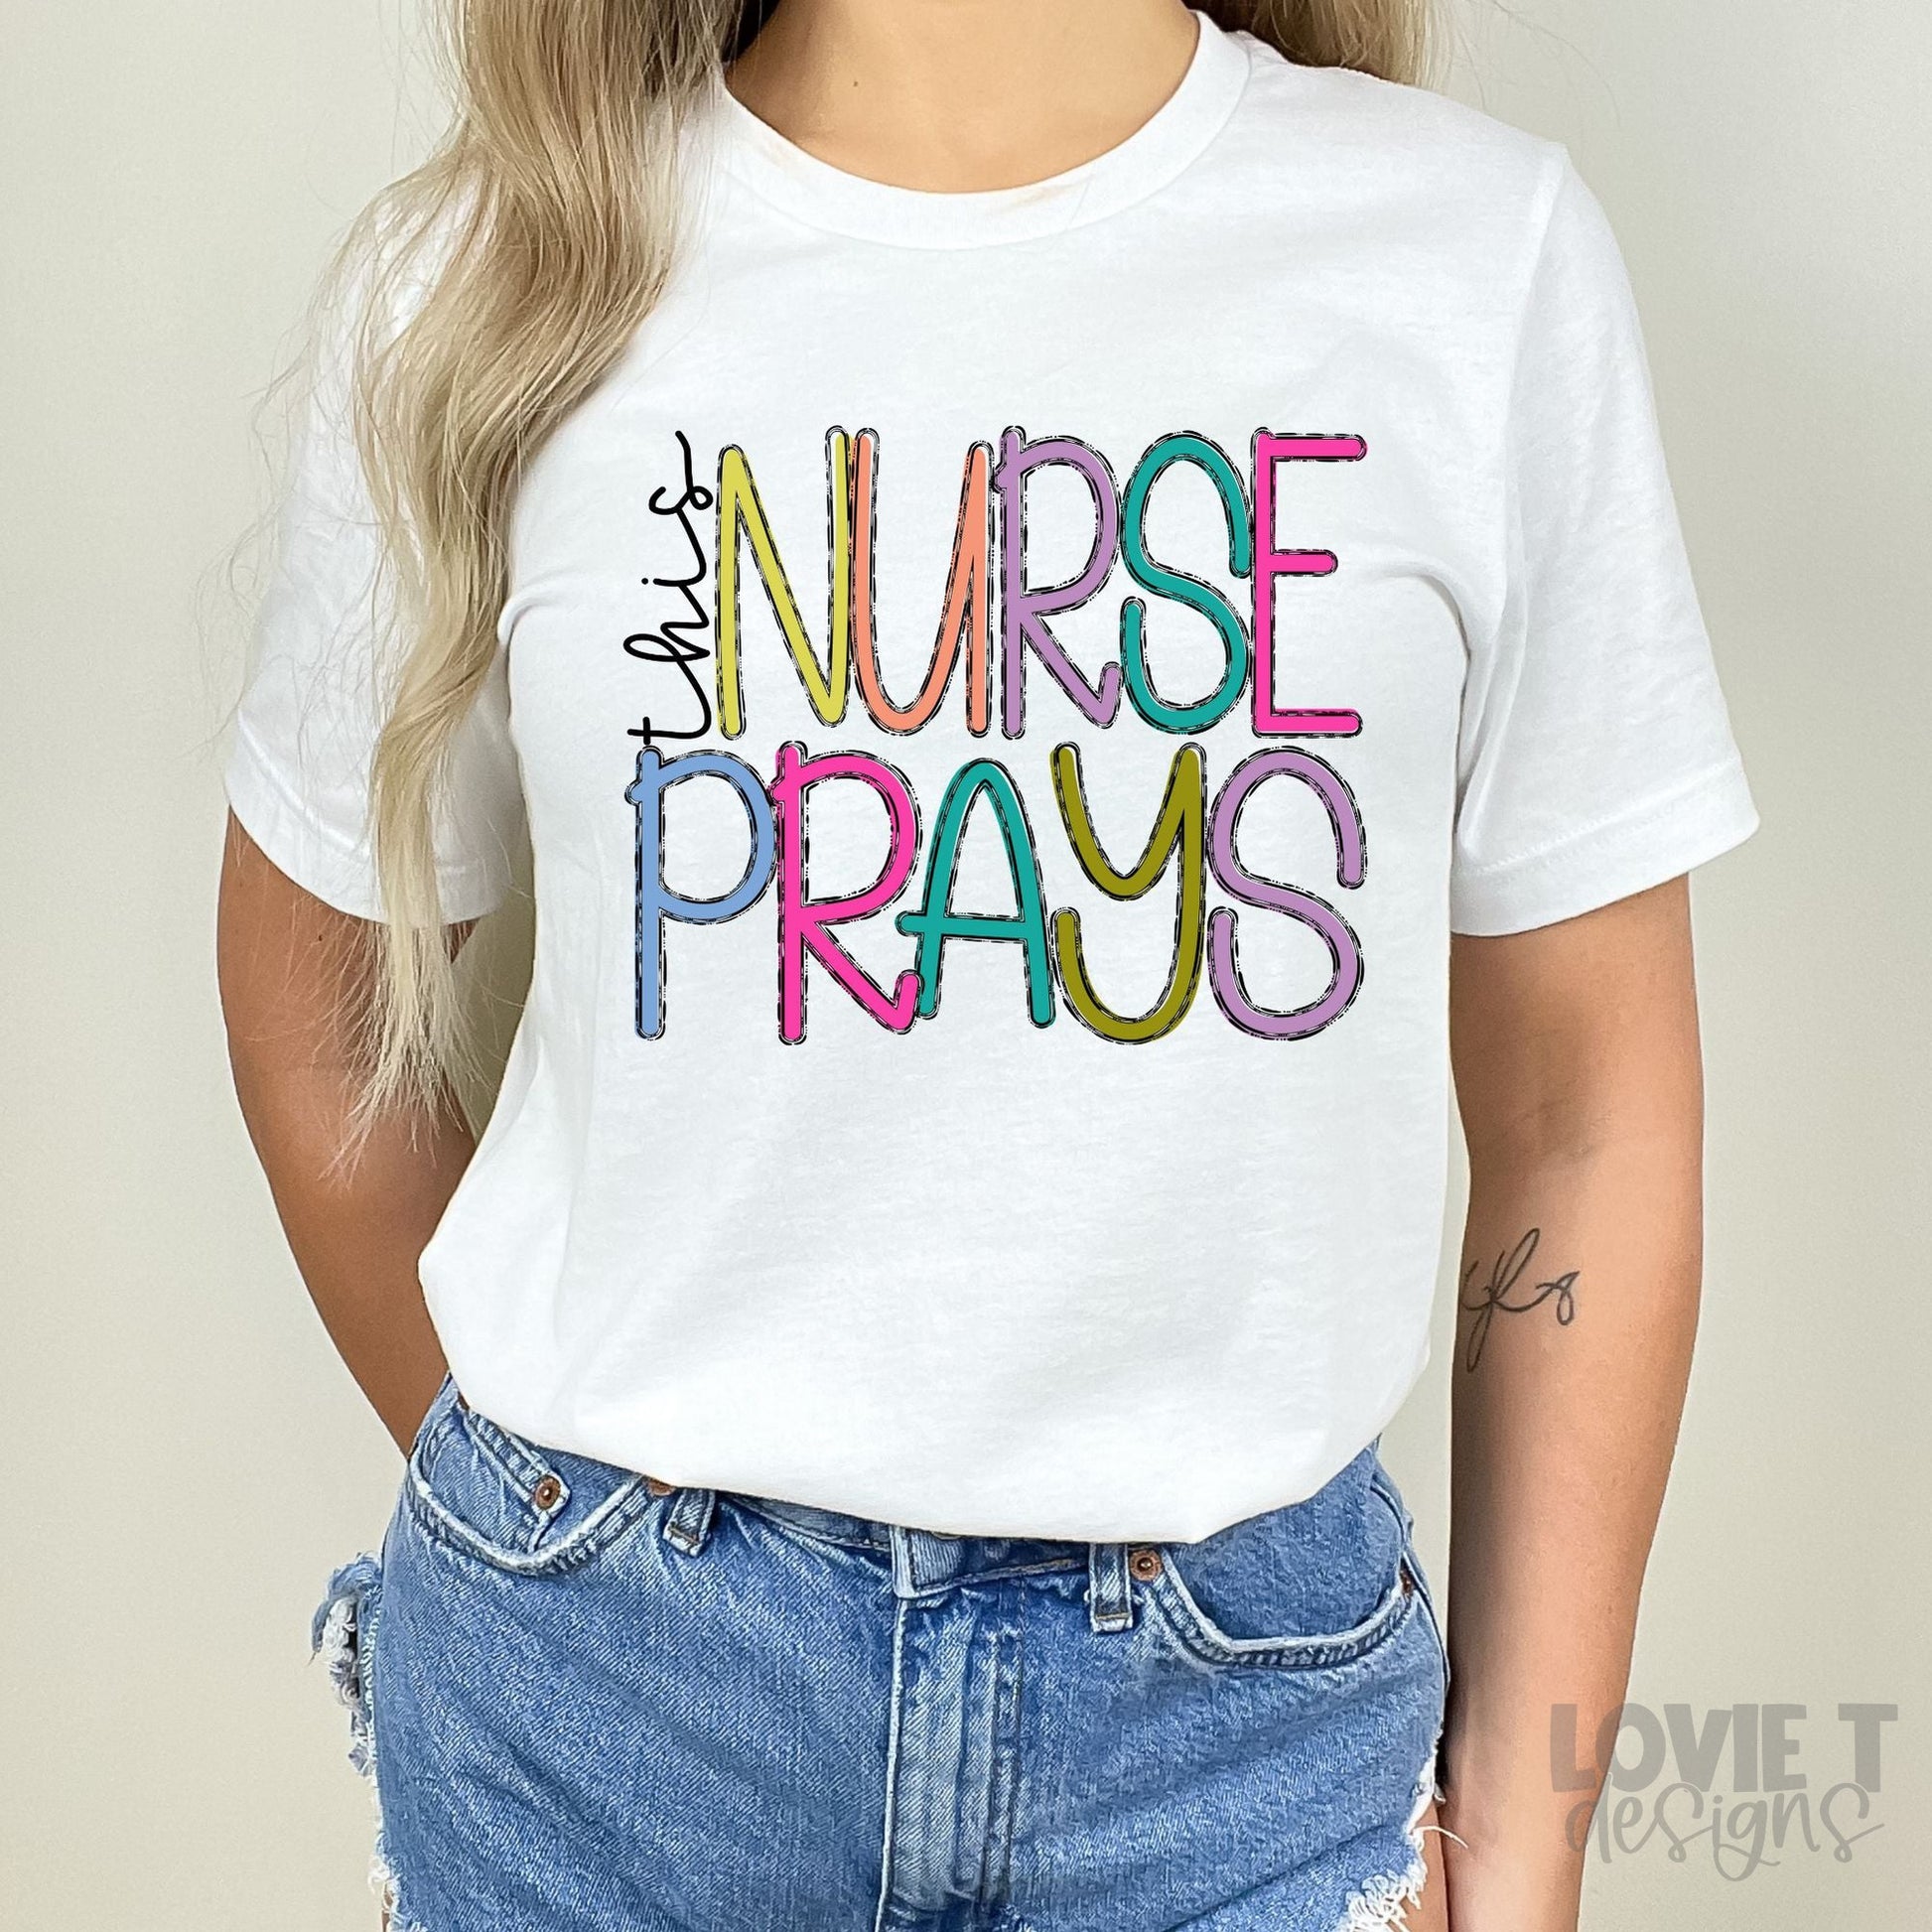 This Nurse Prays